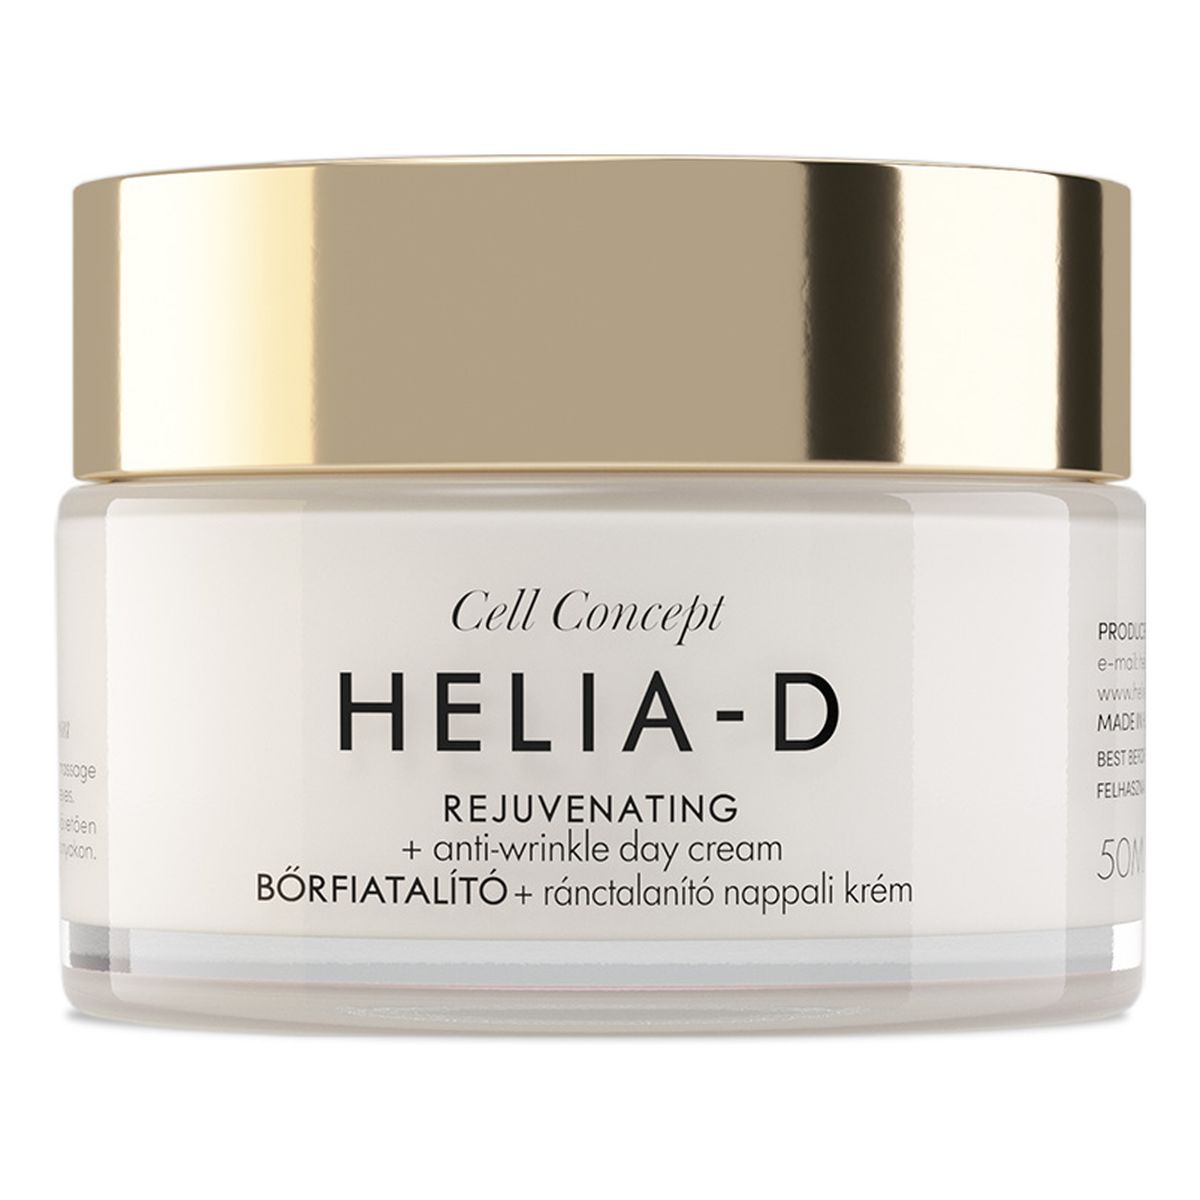 Helia-D Cell Concept Rejuvenating + Anti-wrinkle Day Cream 65+ przeciwzmarszczkowy Krem na dzień 50ml